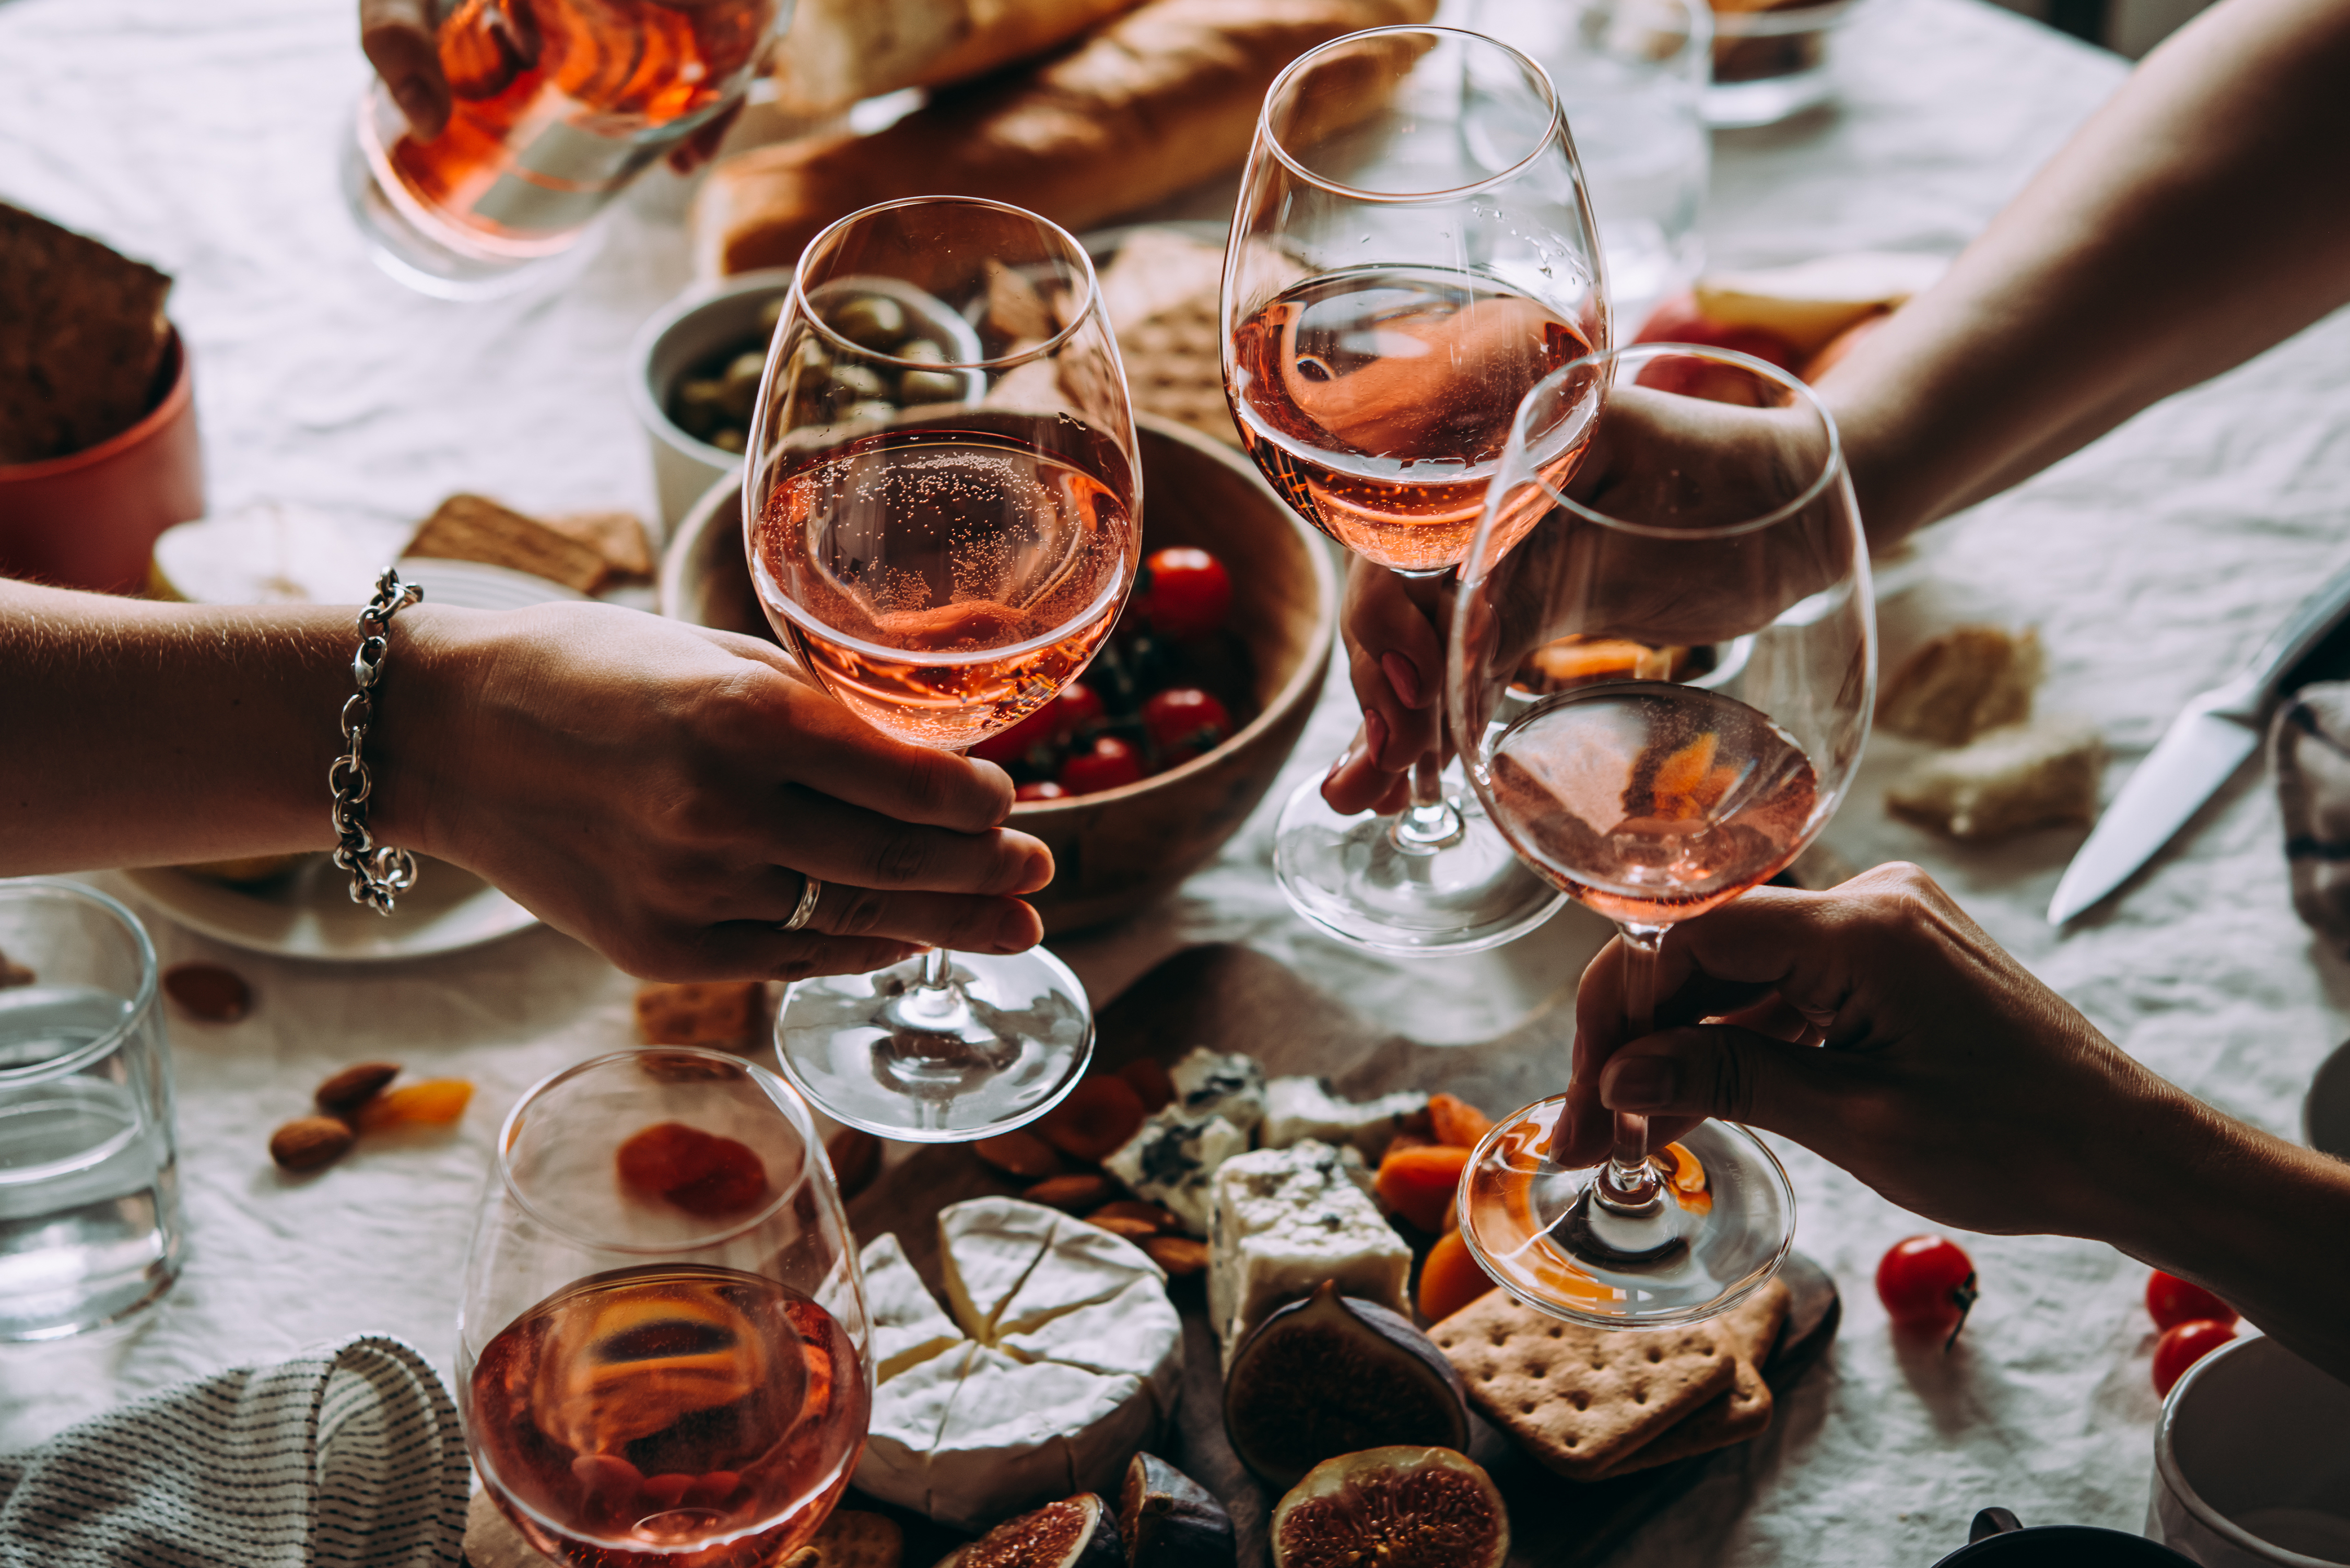 Des personnes tenant des verres de vin lors d'une fête | Source : Shutterstock